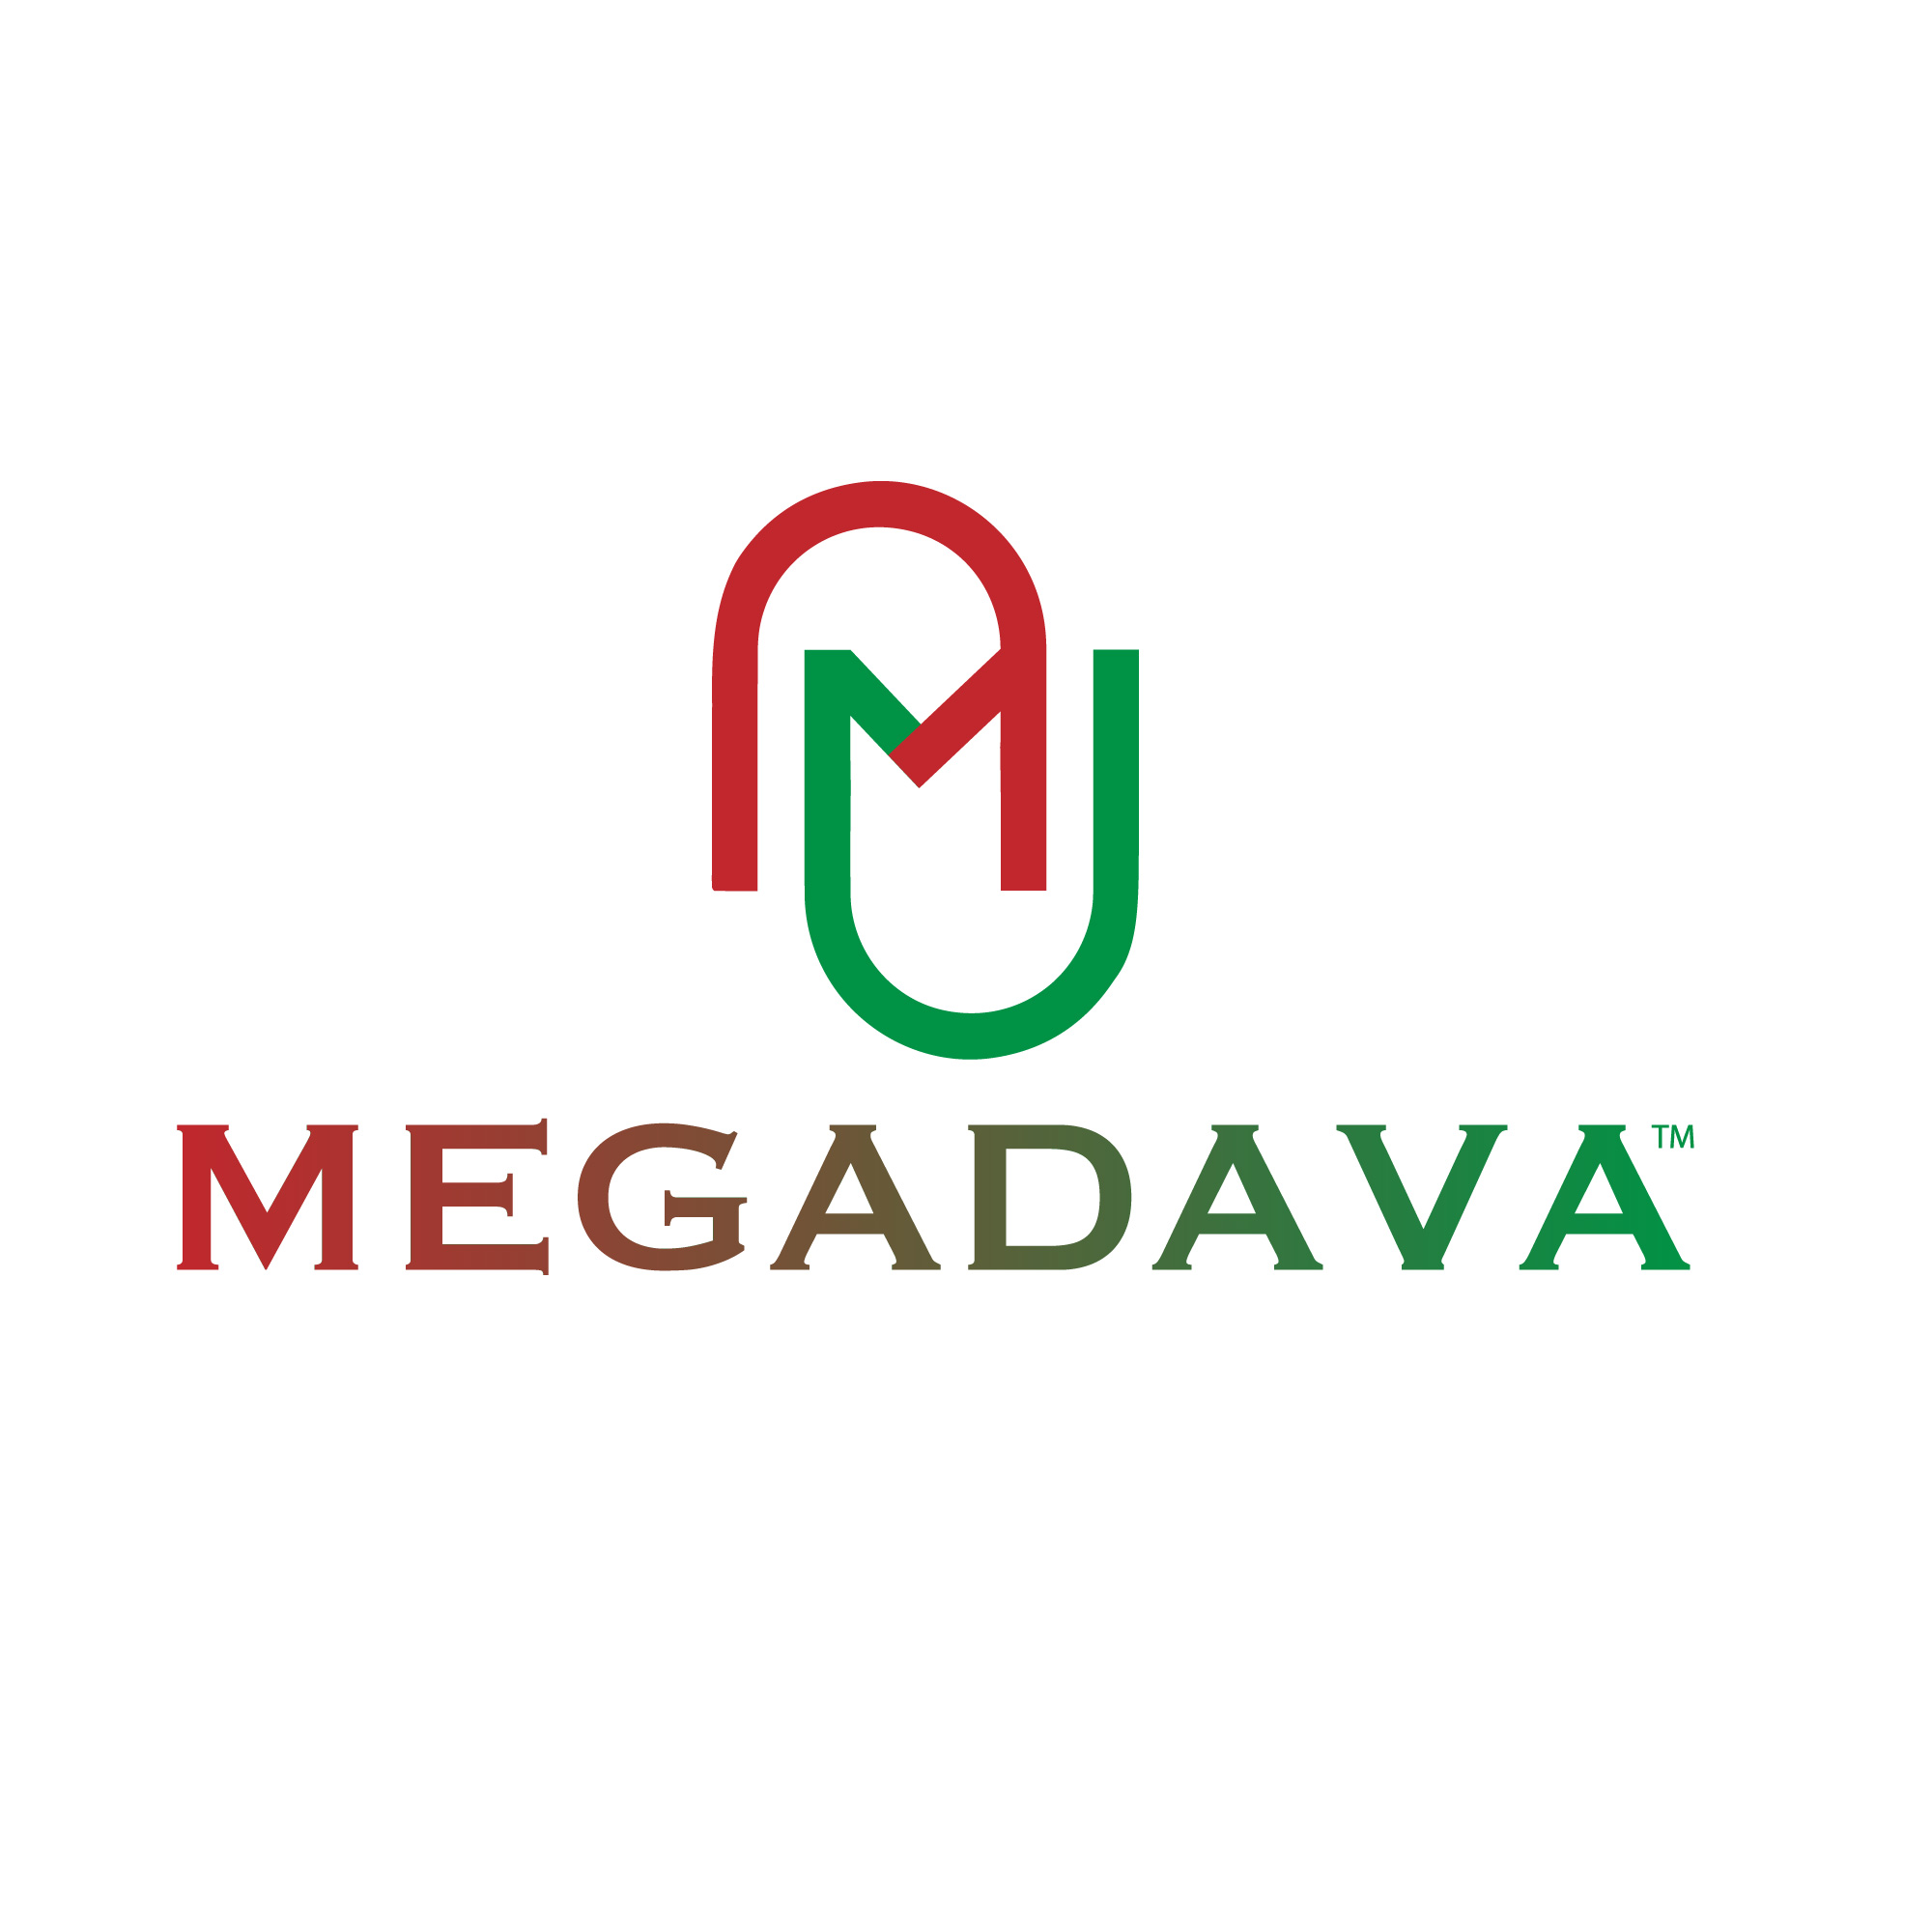 Megadava Pharmaceuticals